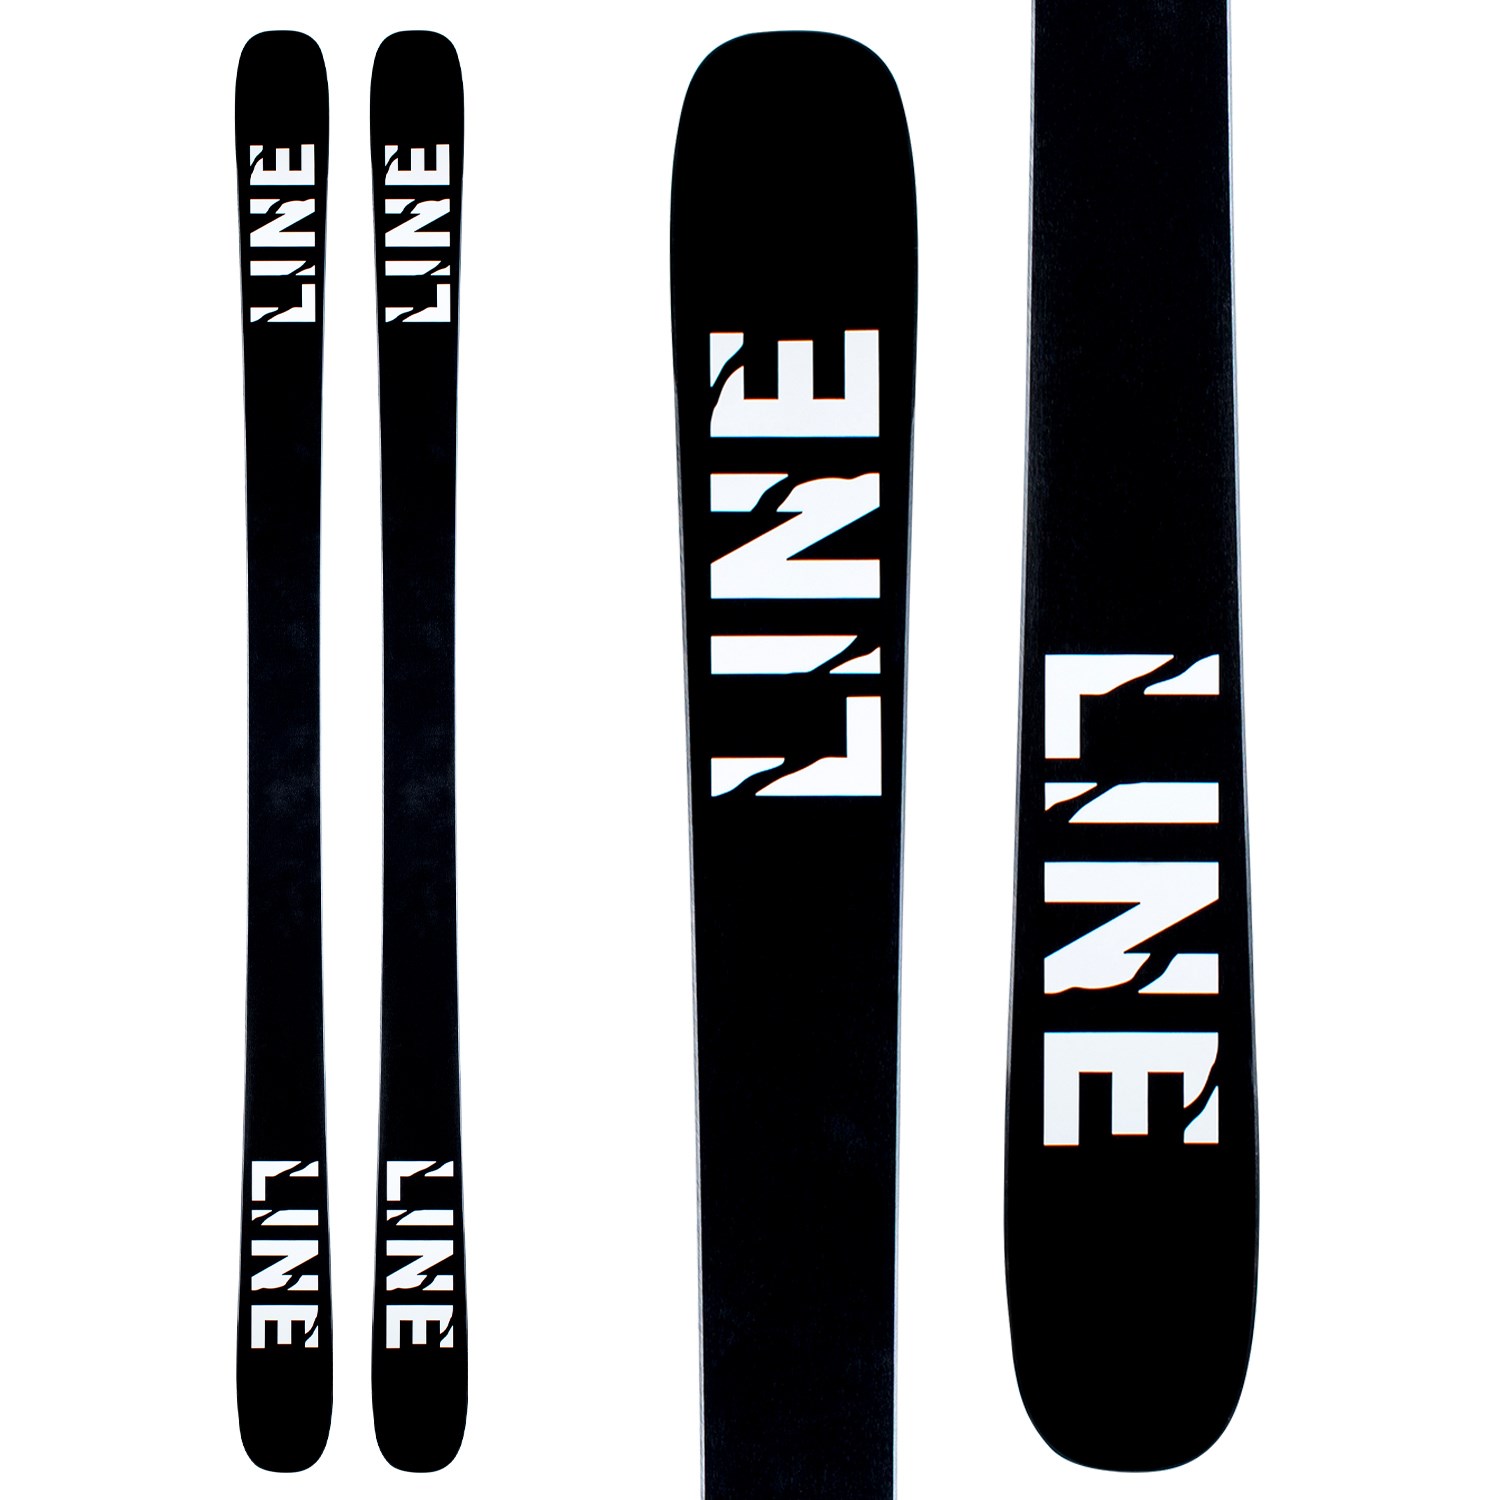 Line Skis Tom Wallisch Pro Skis 2021 | evo